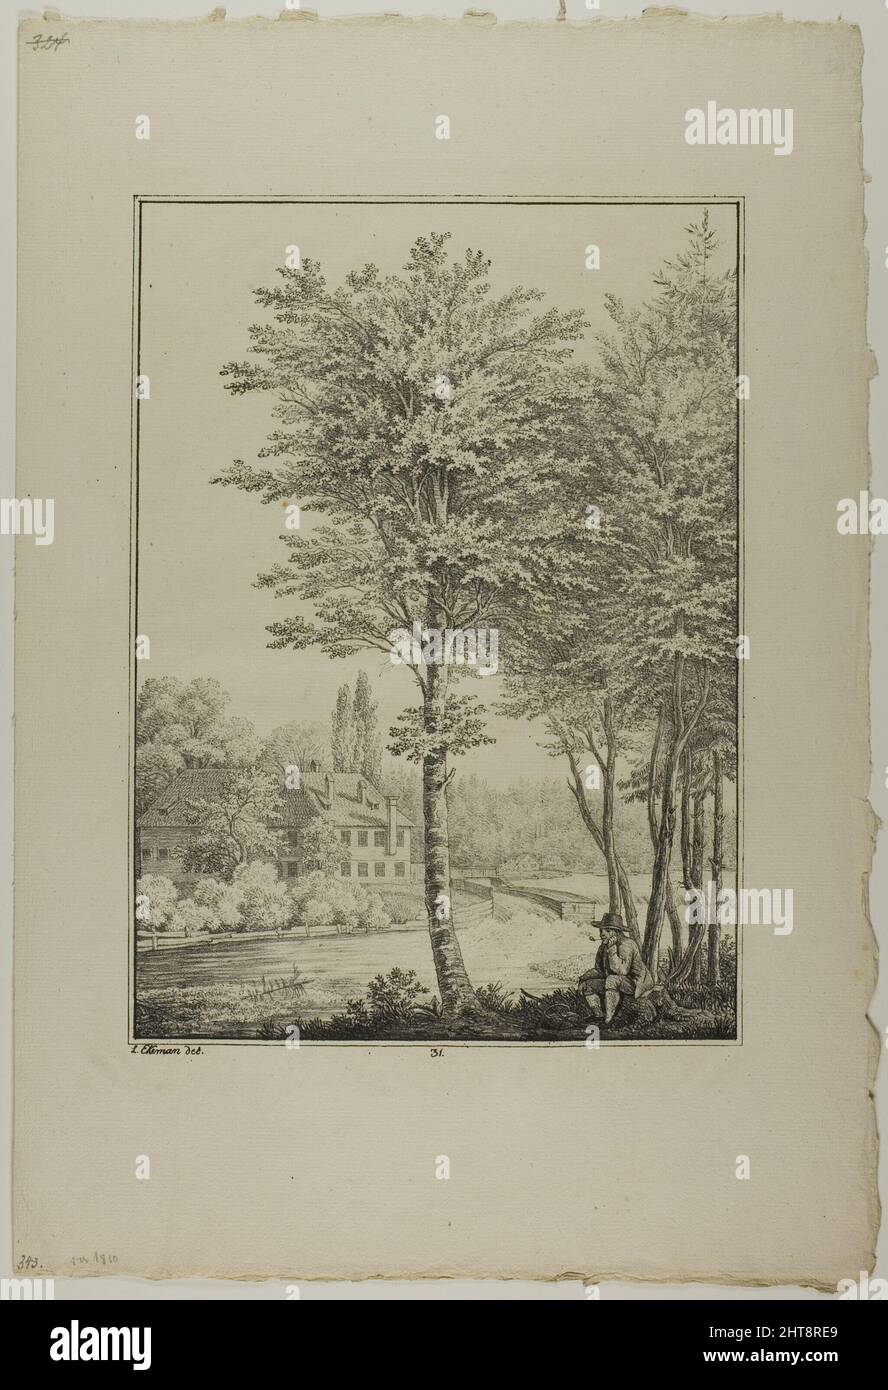 Plate 31 from Blatt Baum und Landschafts Studien, c.1810. Stock Photo